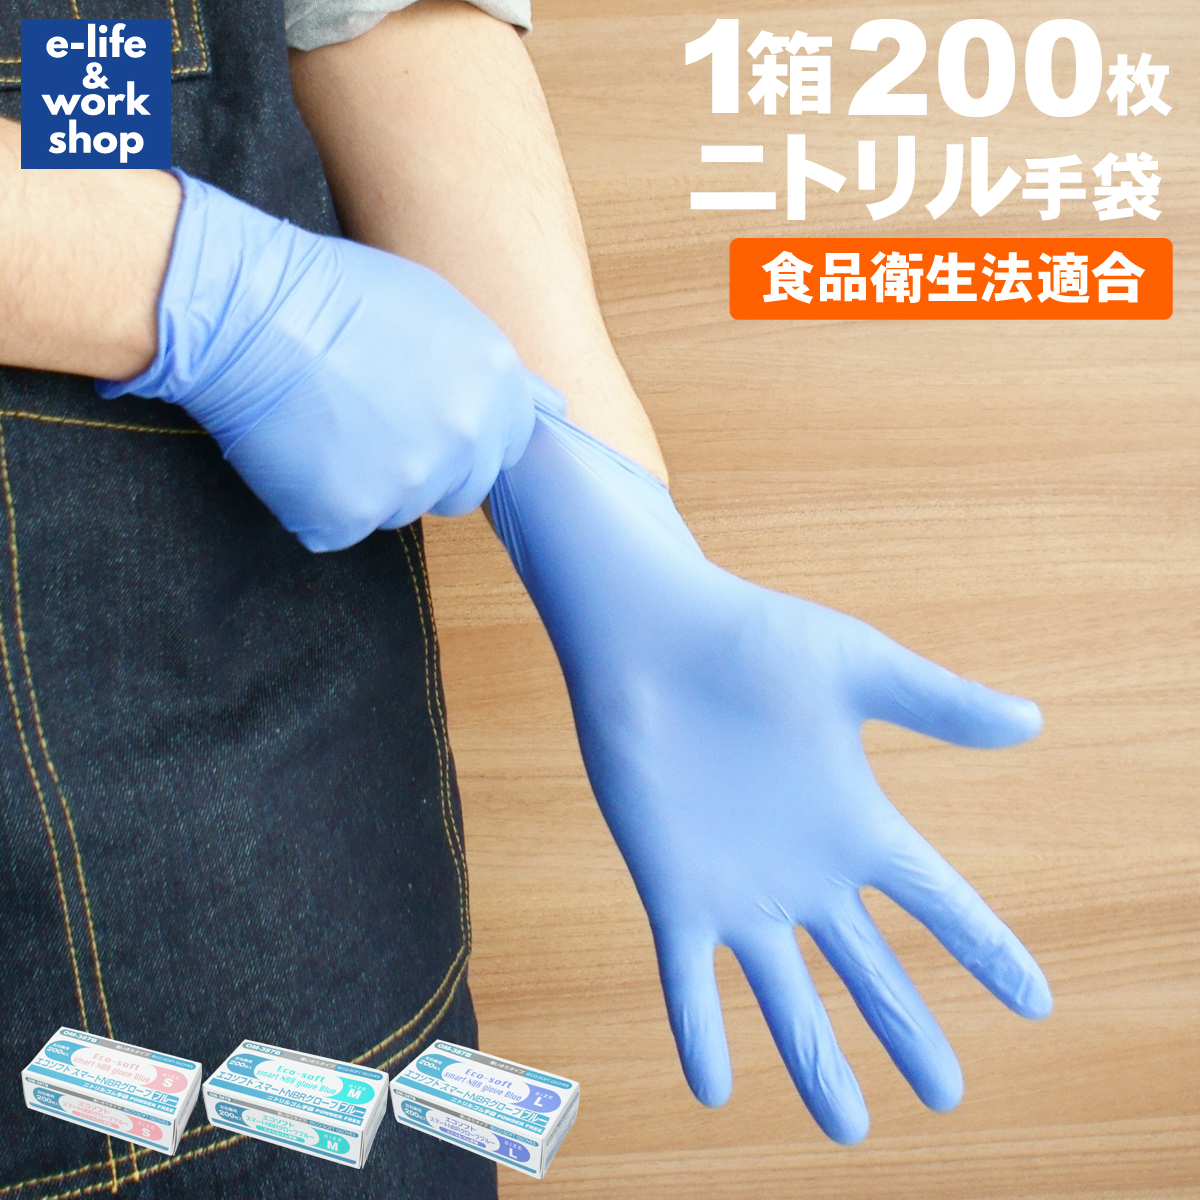 エブノ ニトリルトライエース SSサイズ 100枚 青 ゴム 手袋 グローブya